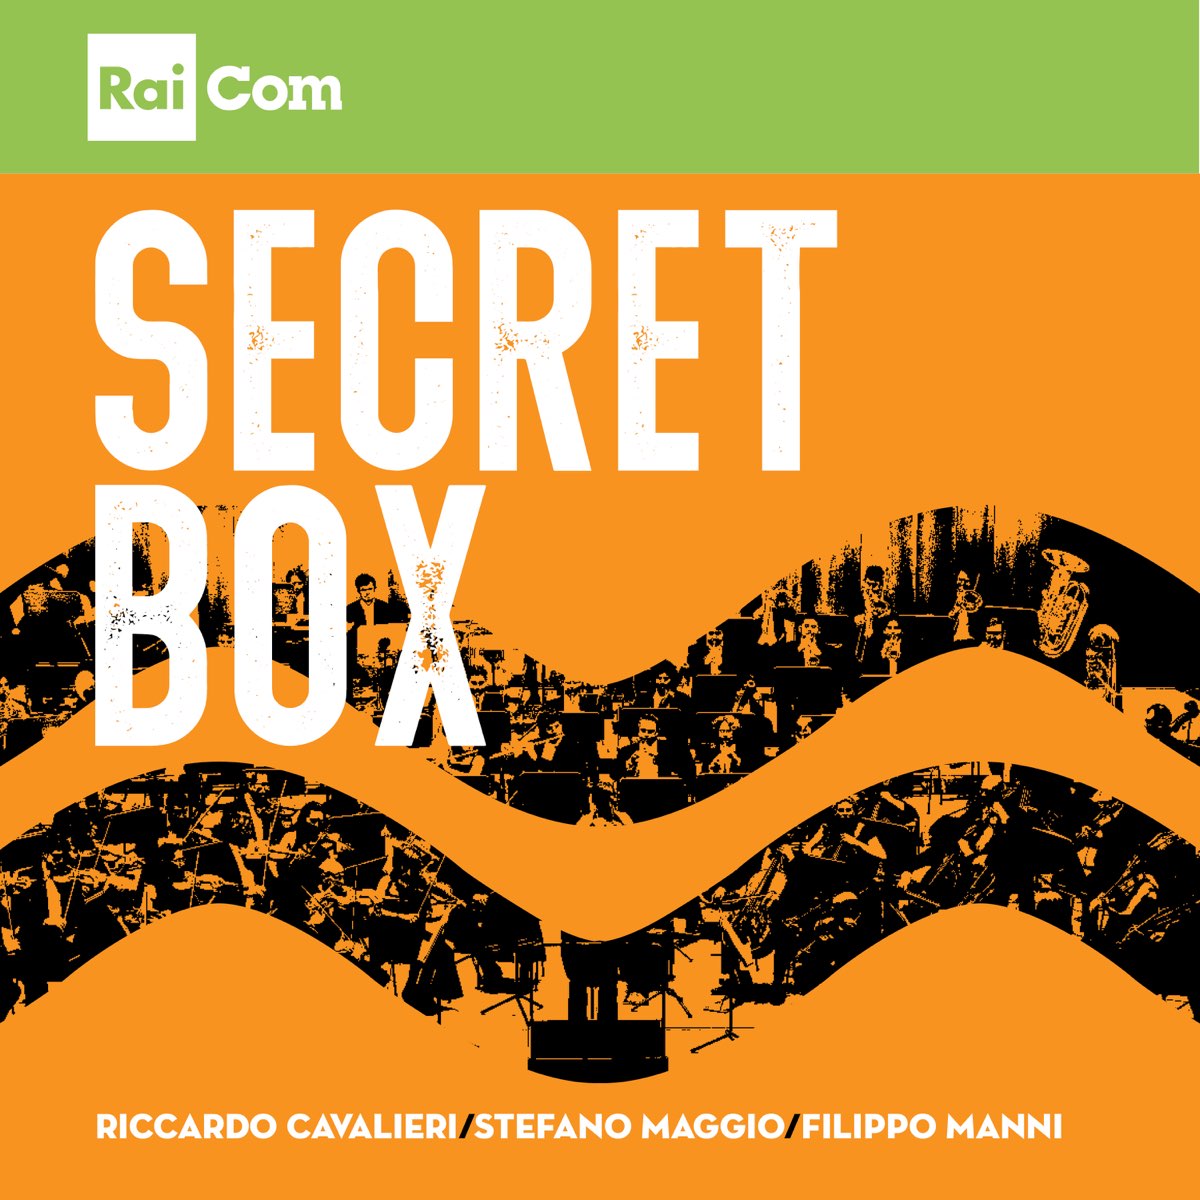 Secret Box (Colonna sonora originale del Programma Tv "Passato e presente")  - Album by Riccardo Cavalieri, Filippo Manni & Stefano Maggio - Apple Music